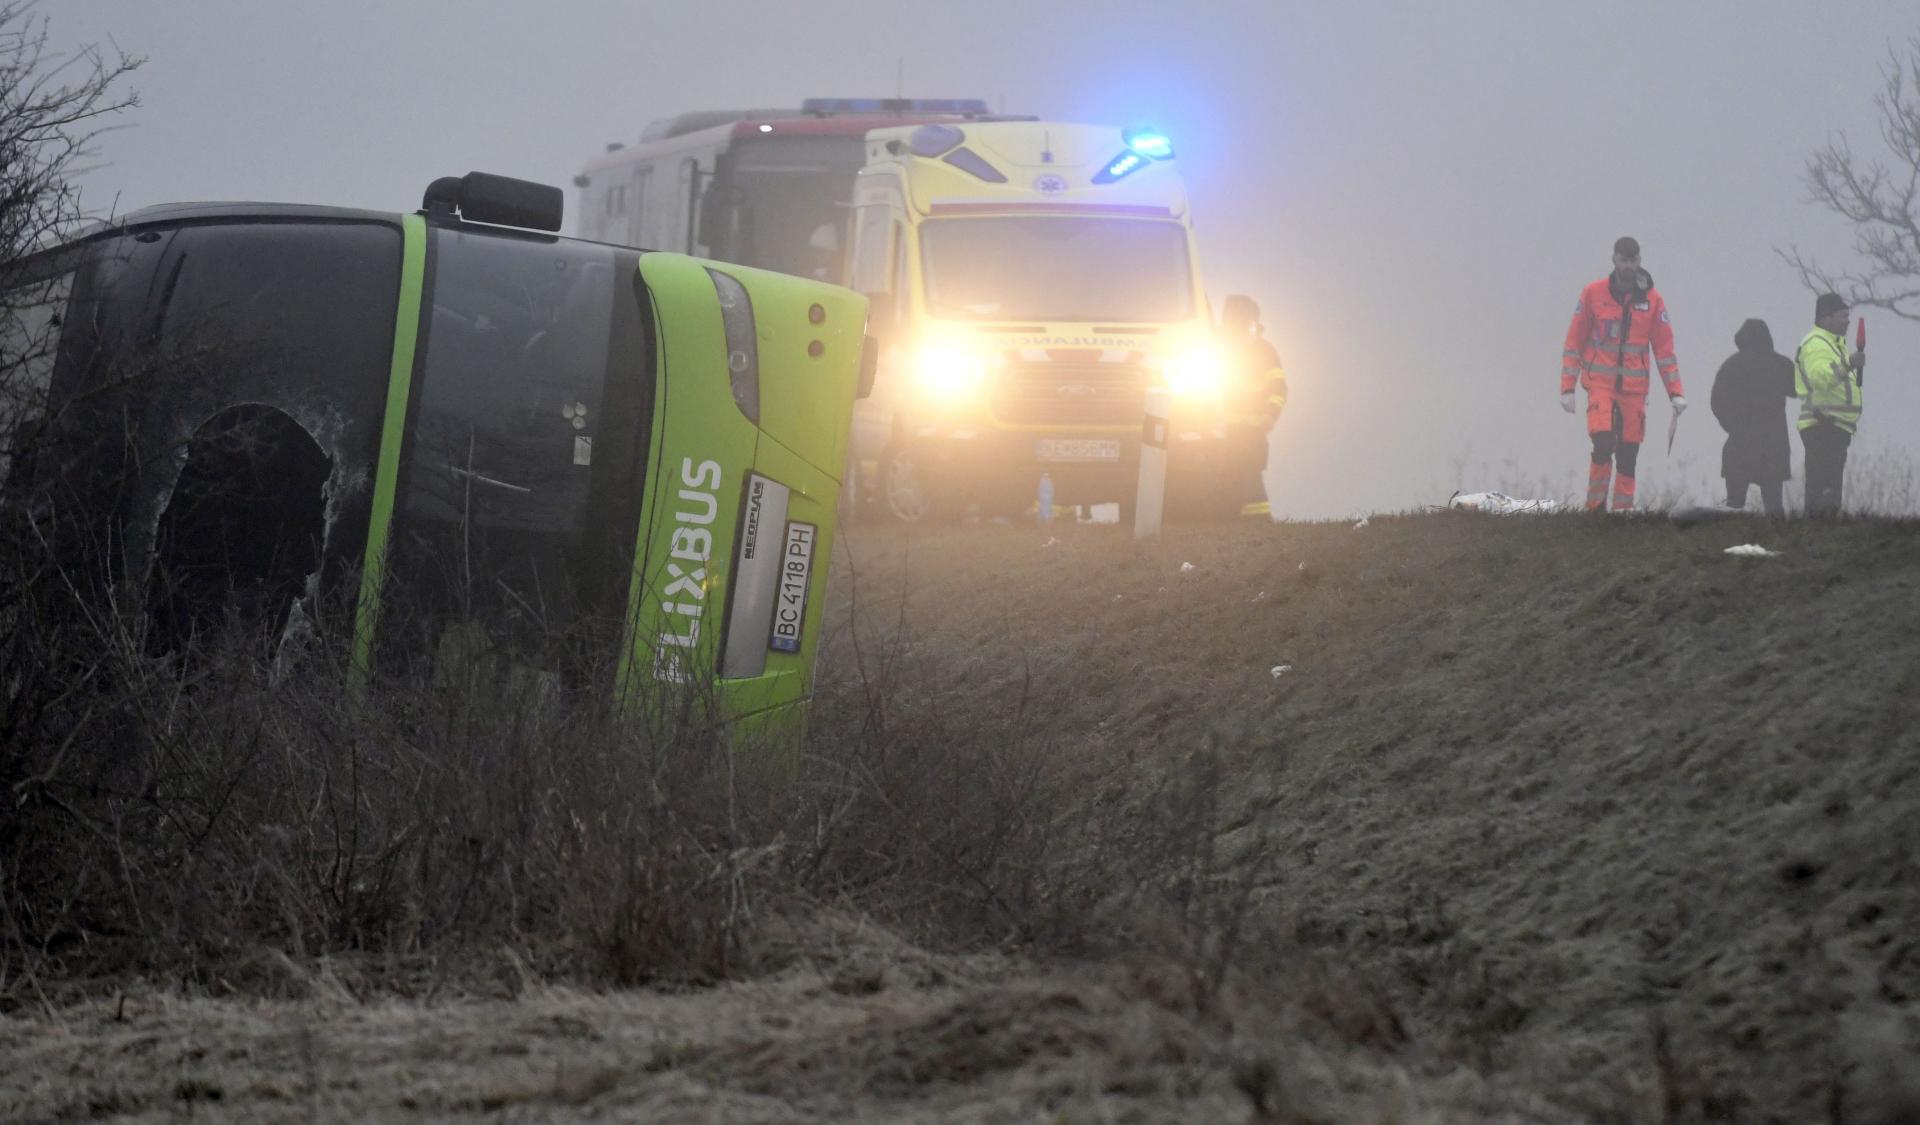 Pri obci Dargov na východnom Slovensku sa prevrátil autobus, zasahujú tam hasiči i záchranári